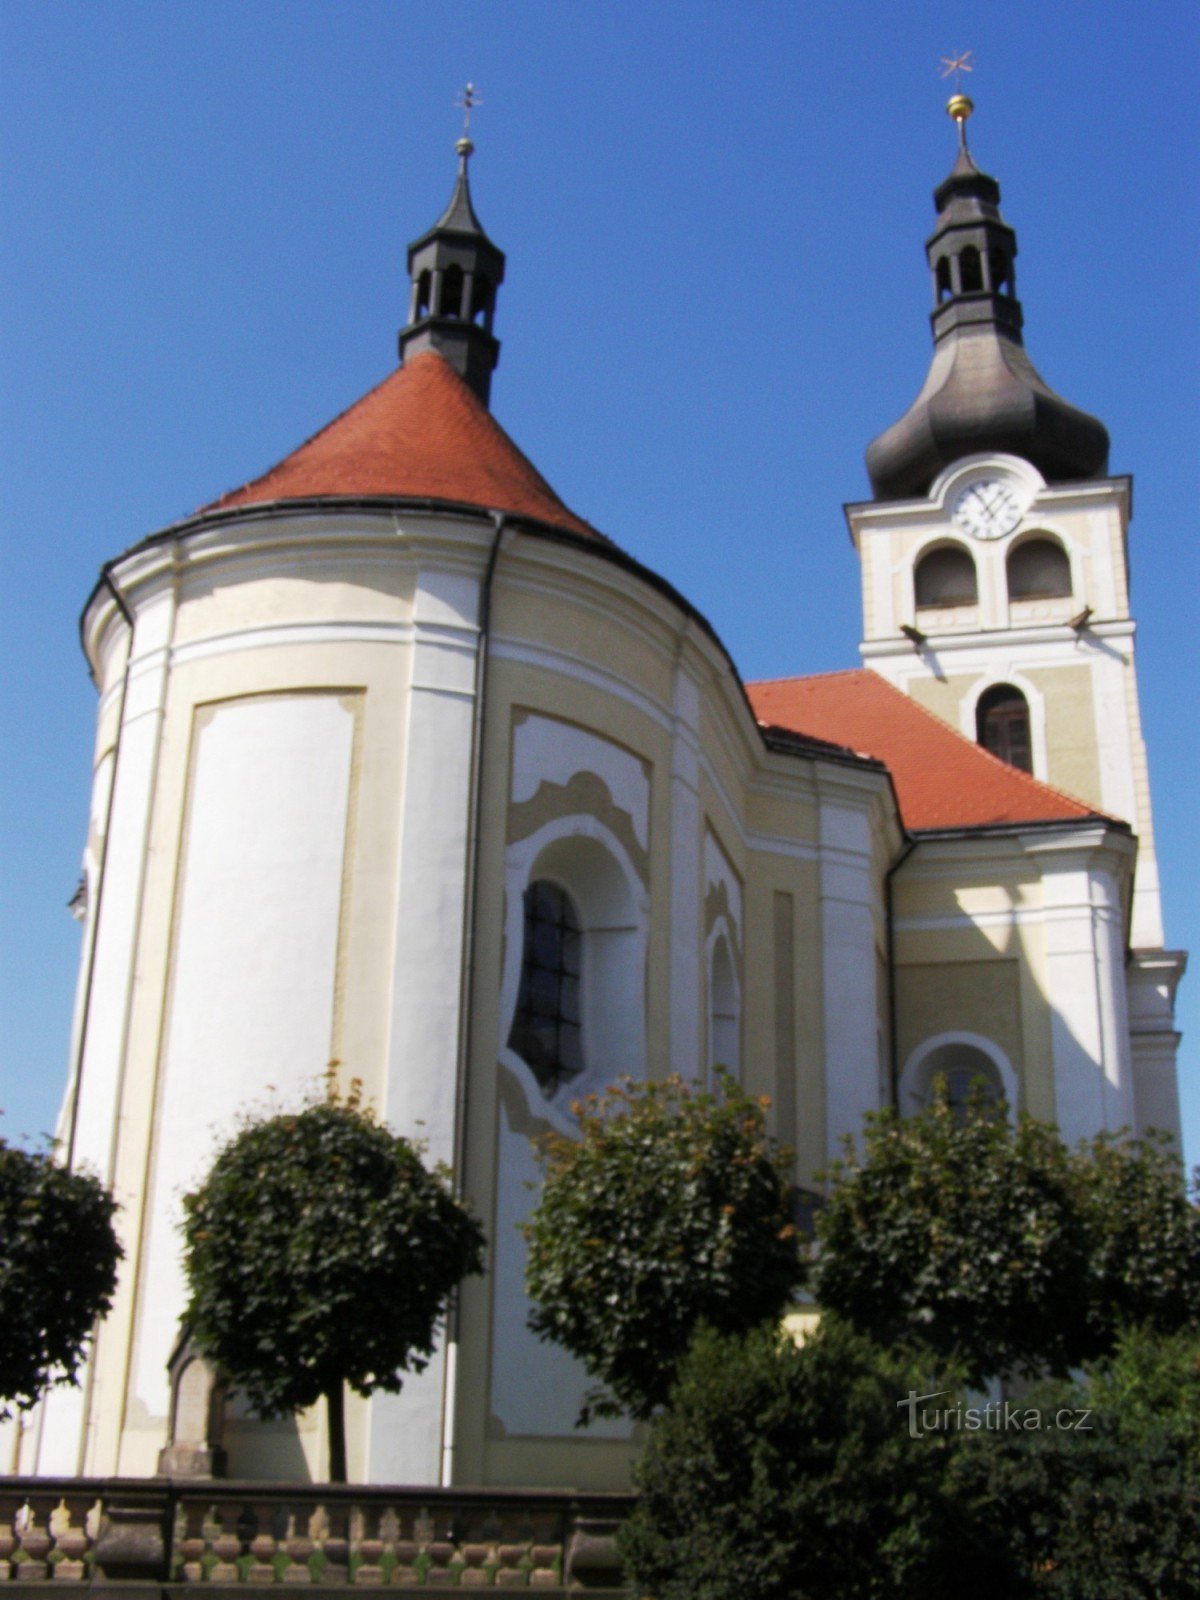 Hořice - Biserica Nașterea Maicii Domnului